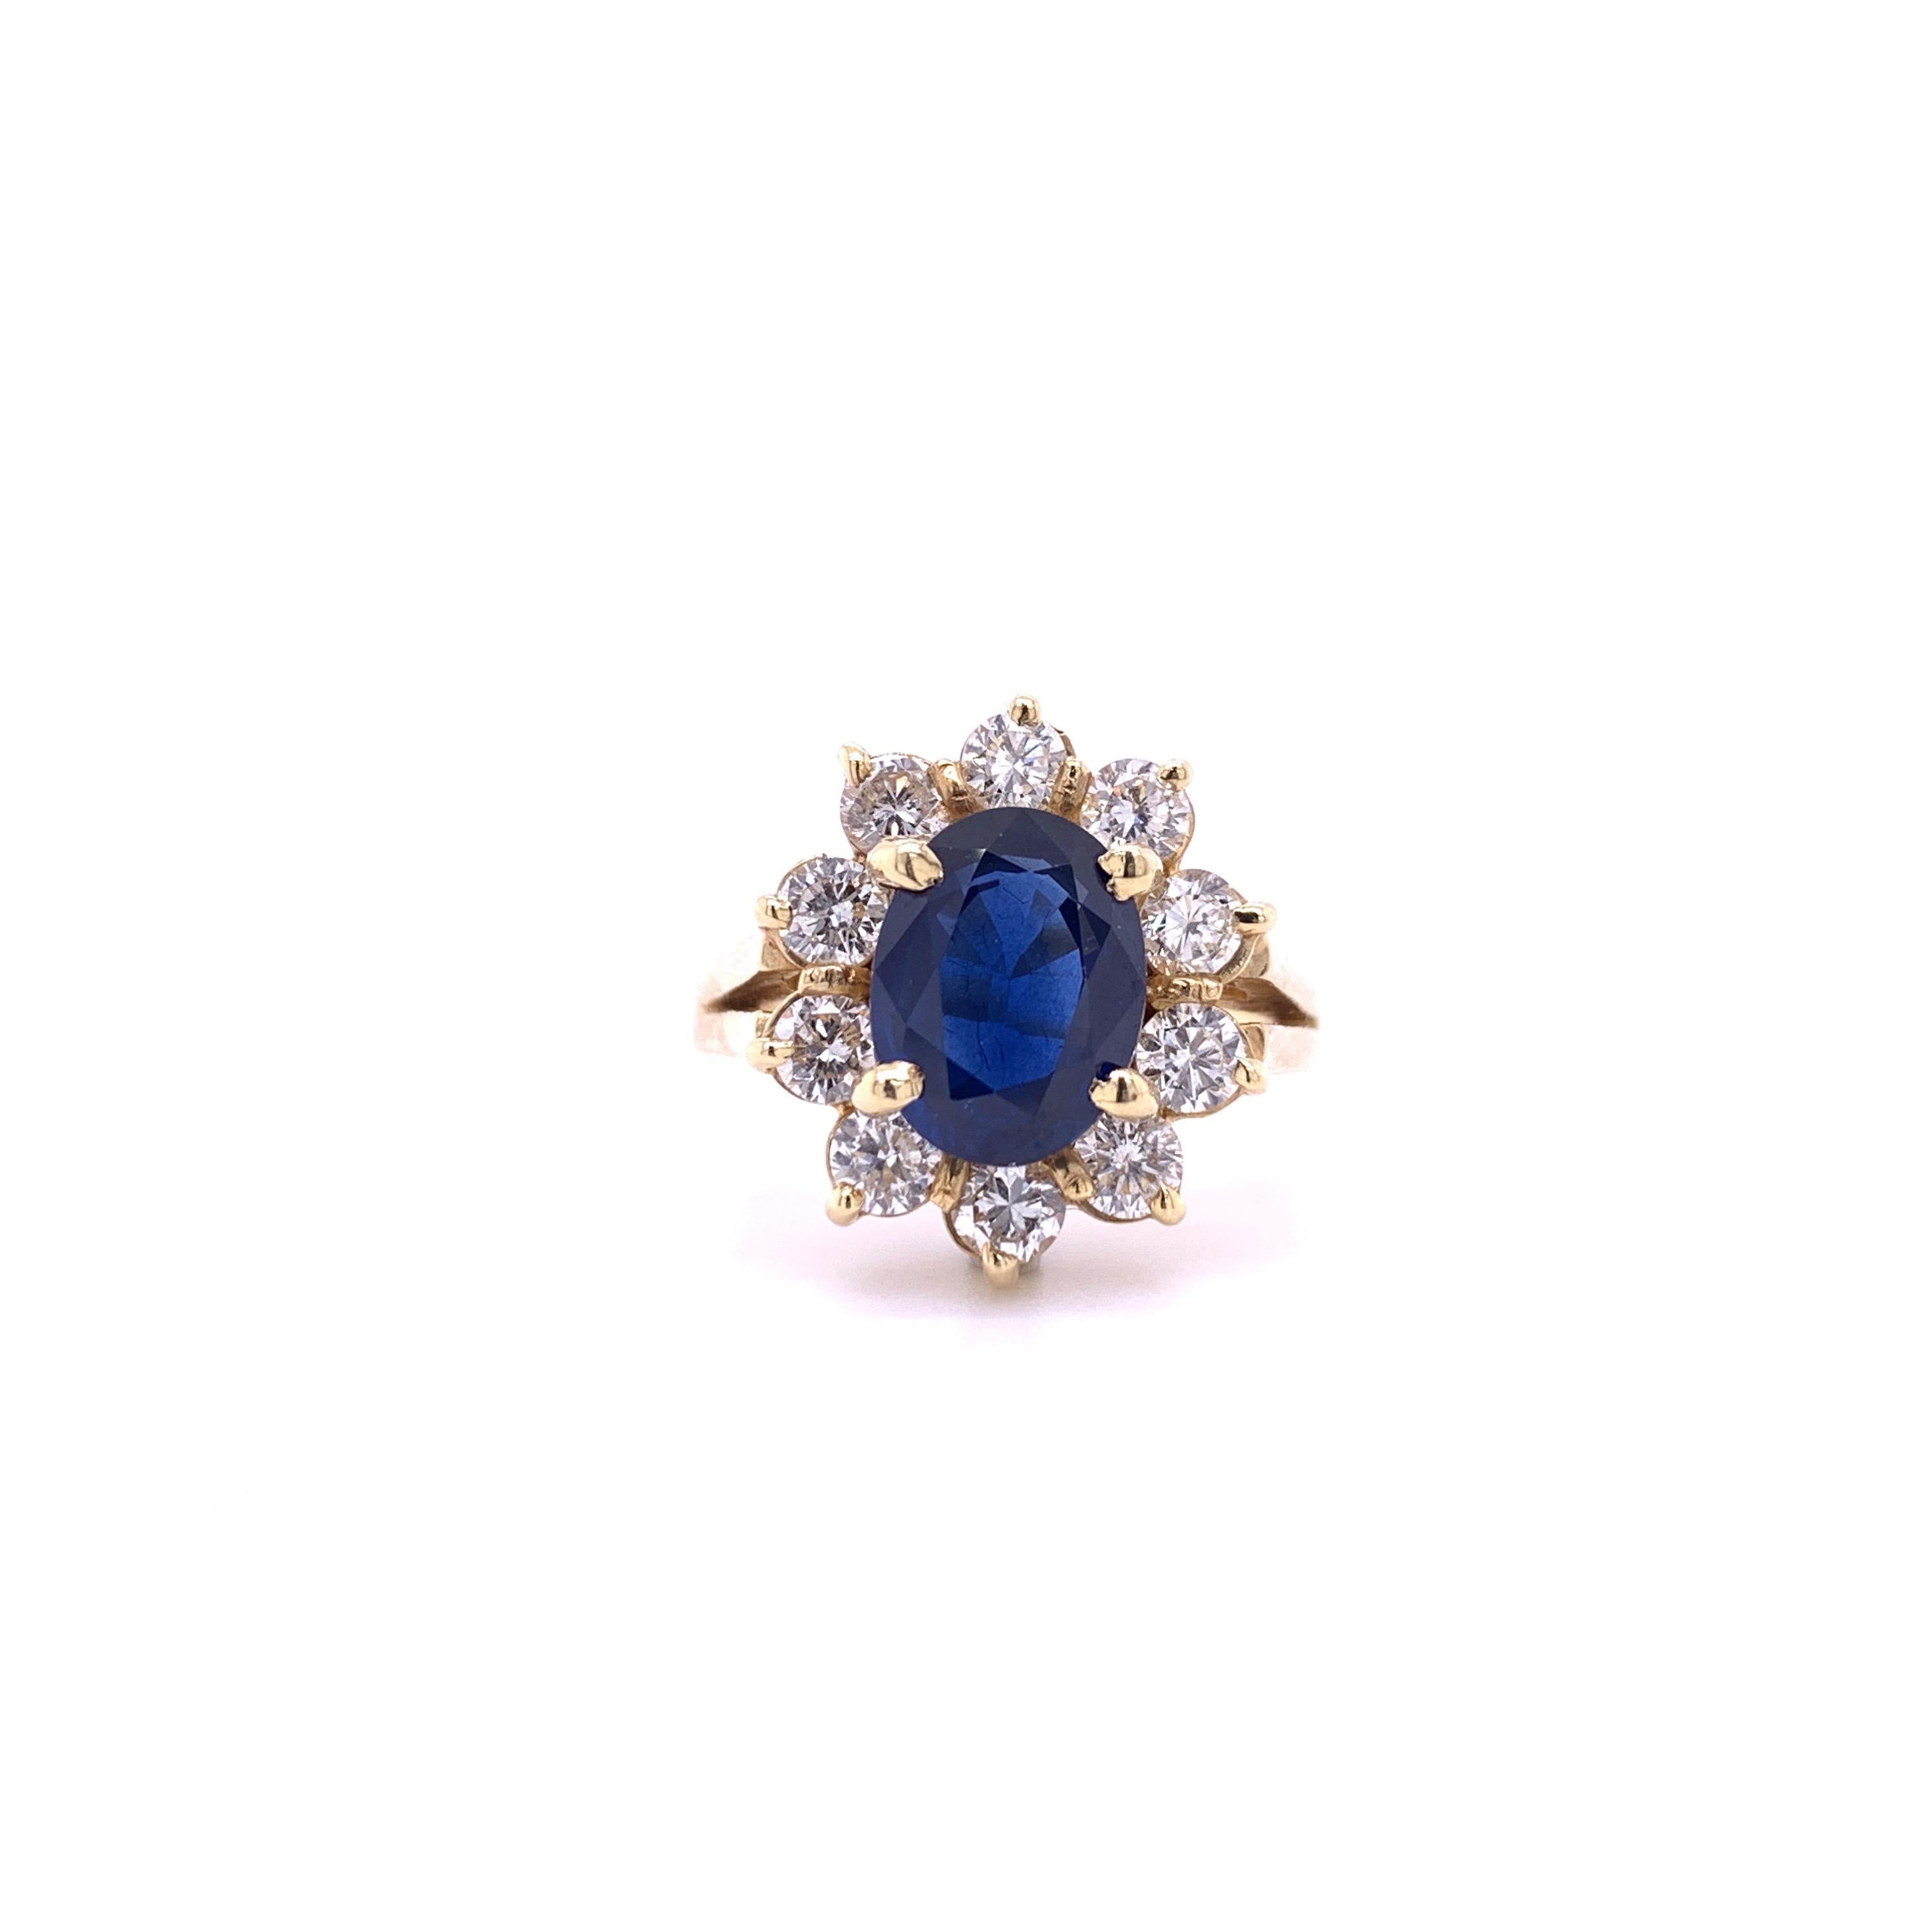 Klassischer Saphir-Diamant-Ring im königlichen Design. Dunkler indigoblauer, ovaler, facettierter, natürlicher Saphir, montiert in einem offenen Korb mit vier Zacken, akzentuiert mit runden Diamanten im Brillantschliff in einem Blumenmuster.